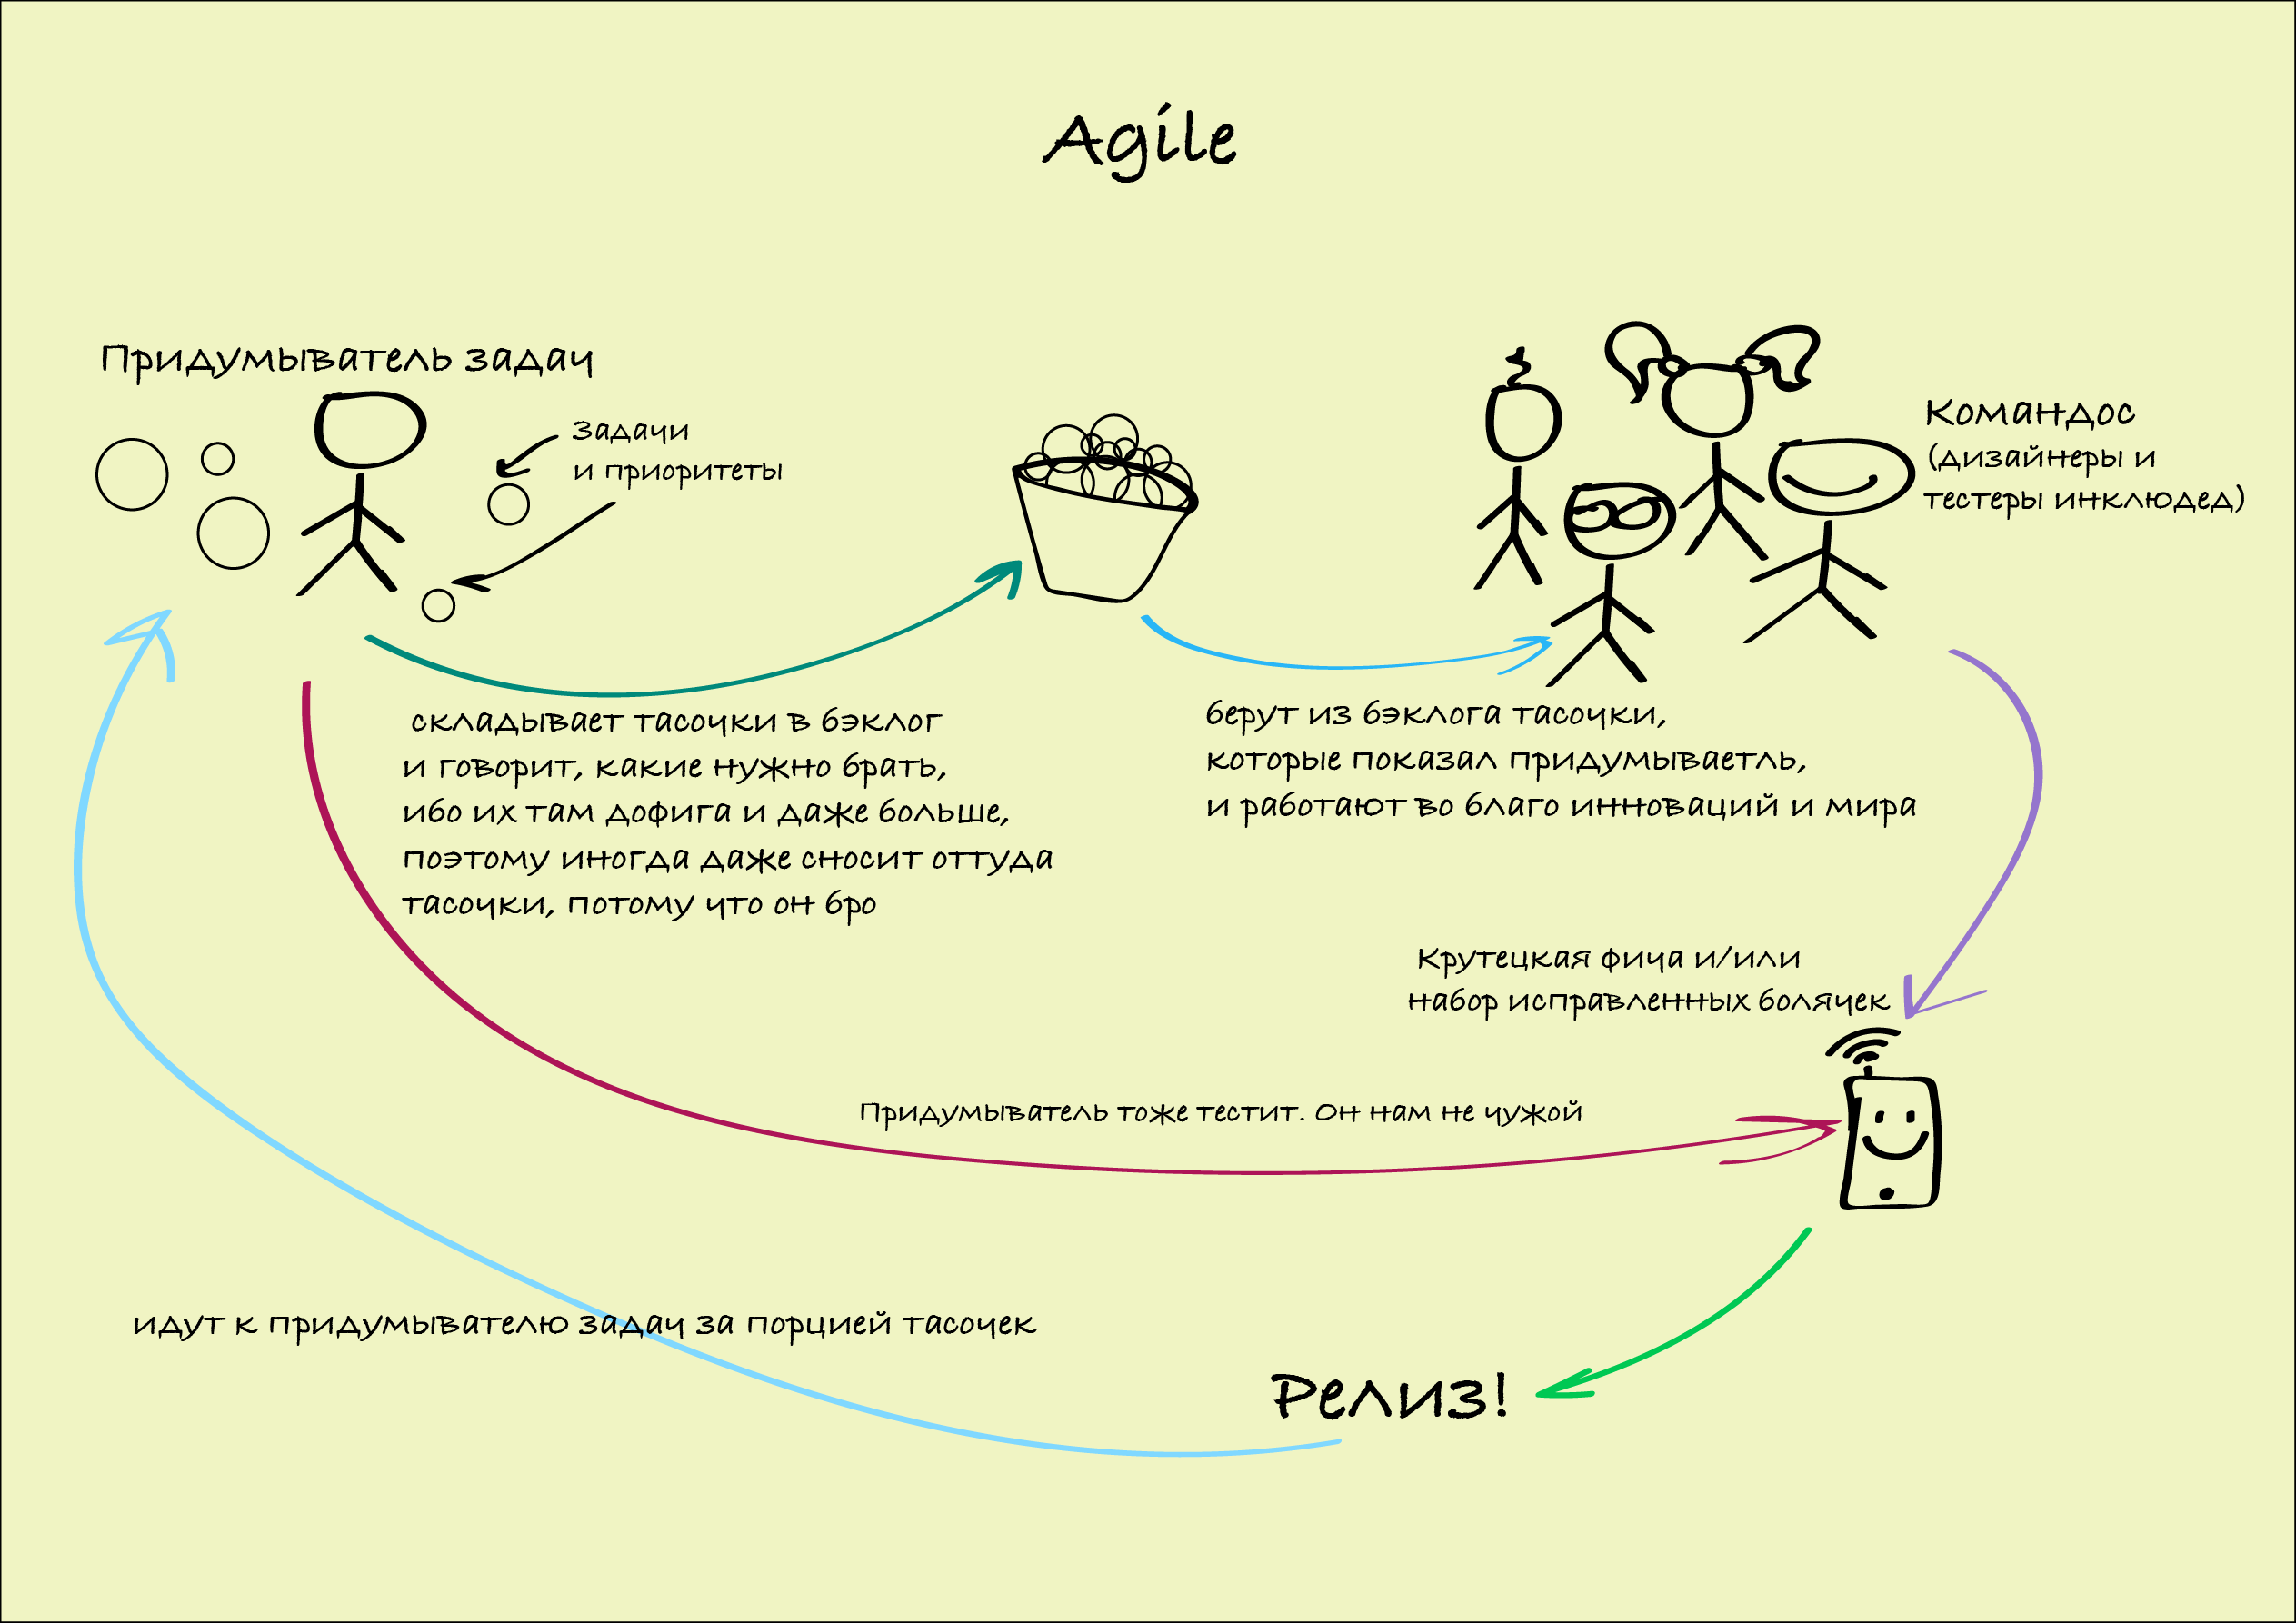 Фича это простыми словами. Методология разработки Agile. Методы управления Agile. Agile управление проектами. Процесс разработки по Agile.